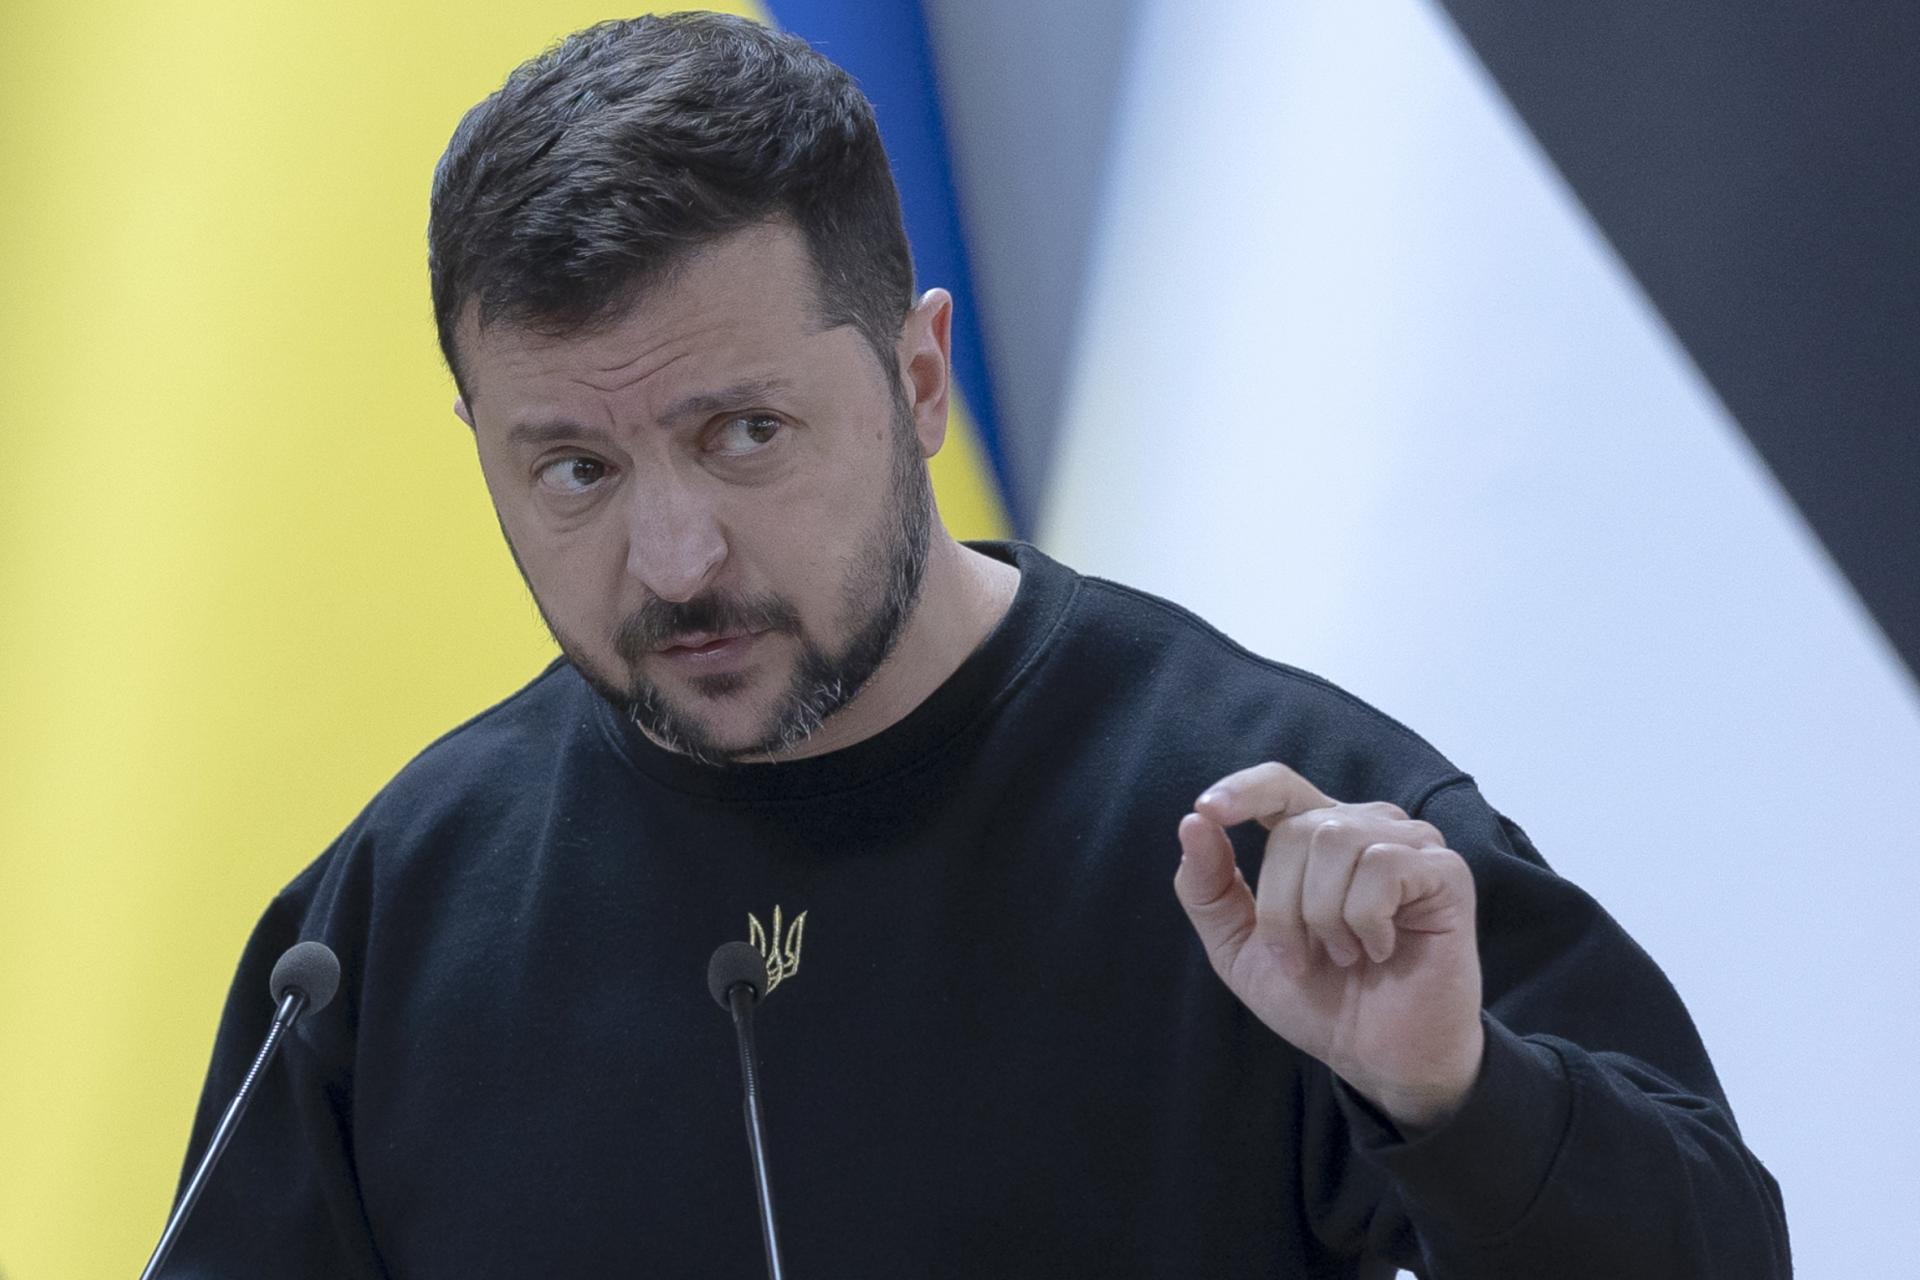 Ukrajina odmieta mierovú misiu Vatikánu, o ktorej pápež rokoval aj s Orbánom